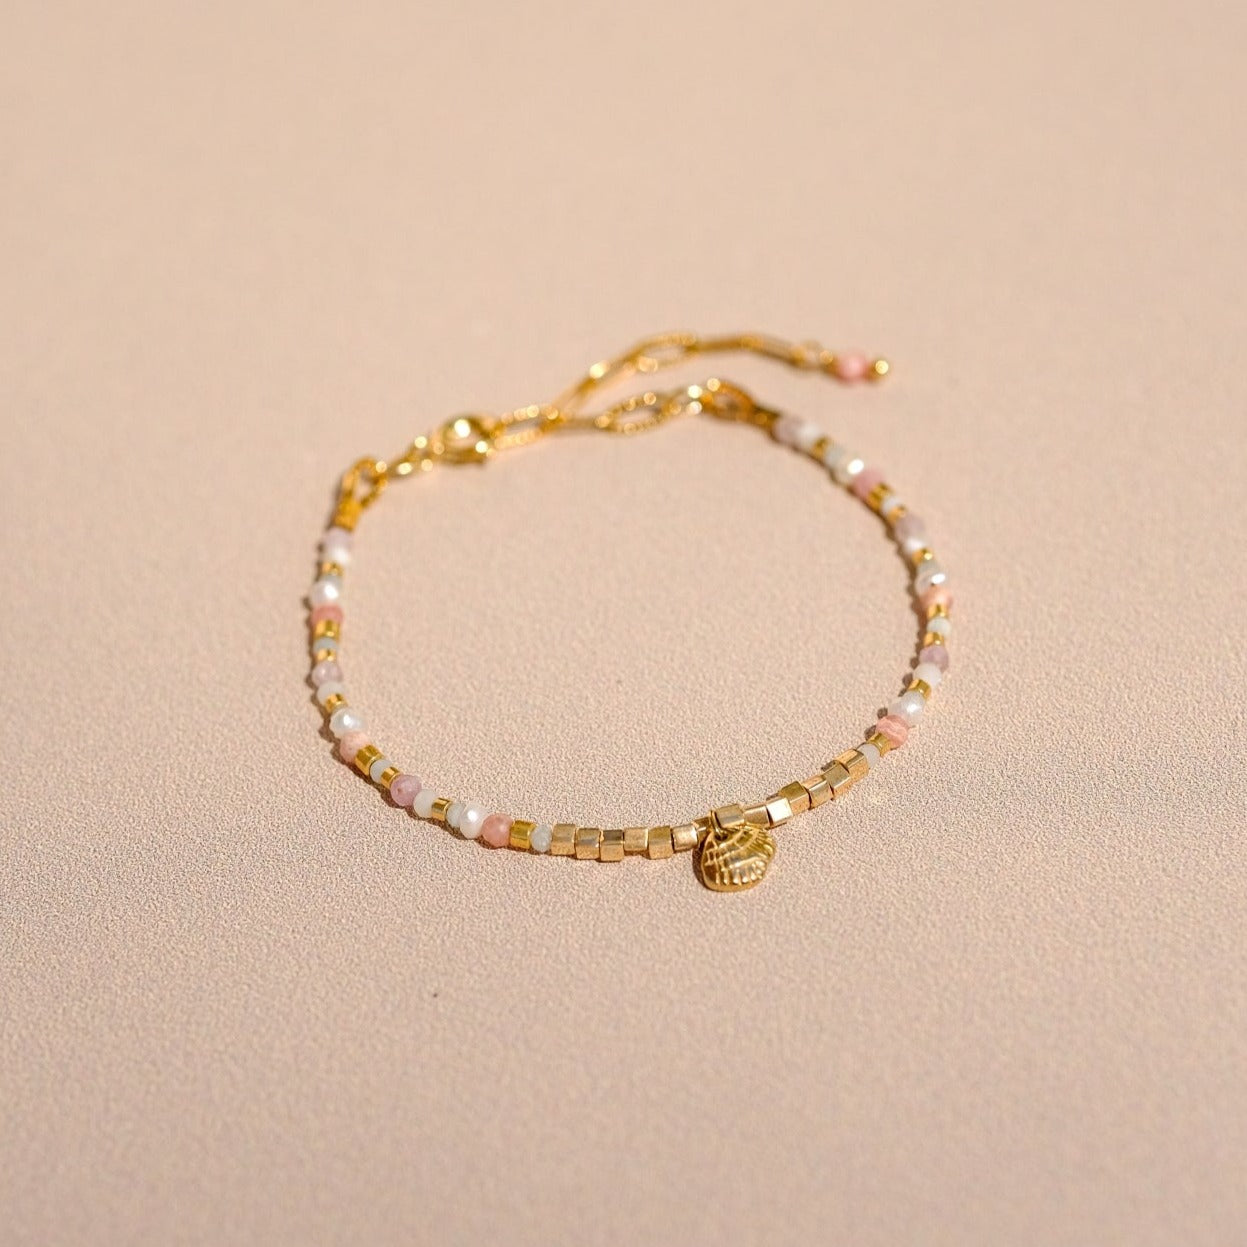 Bracelet "Hope" composé de pierres semi précieuses (perle d'eau, rhodochrosite, kunzite, nacre, amazonite verte et bleue), d'une breloque coquillage ainsi que de perles doré à l'or fin.